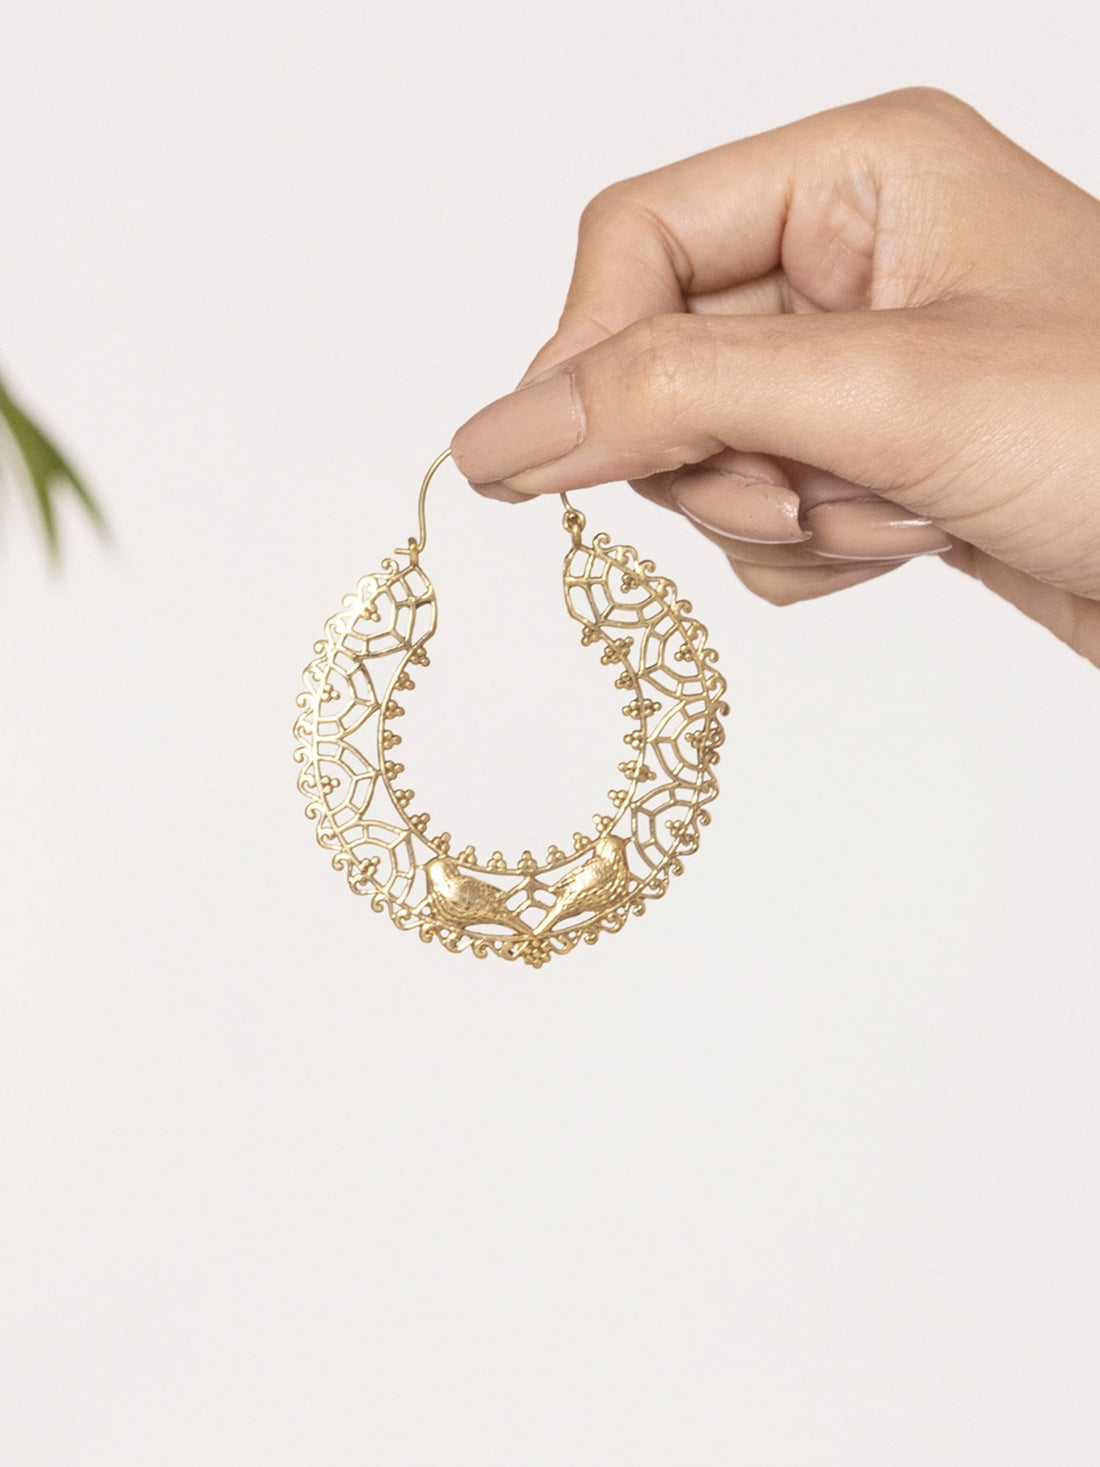 Festive Wear Hoops Earrings - Western Gold-Plated Brass Earrings By Studio One Love